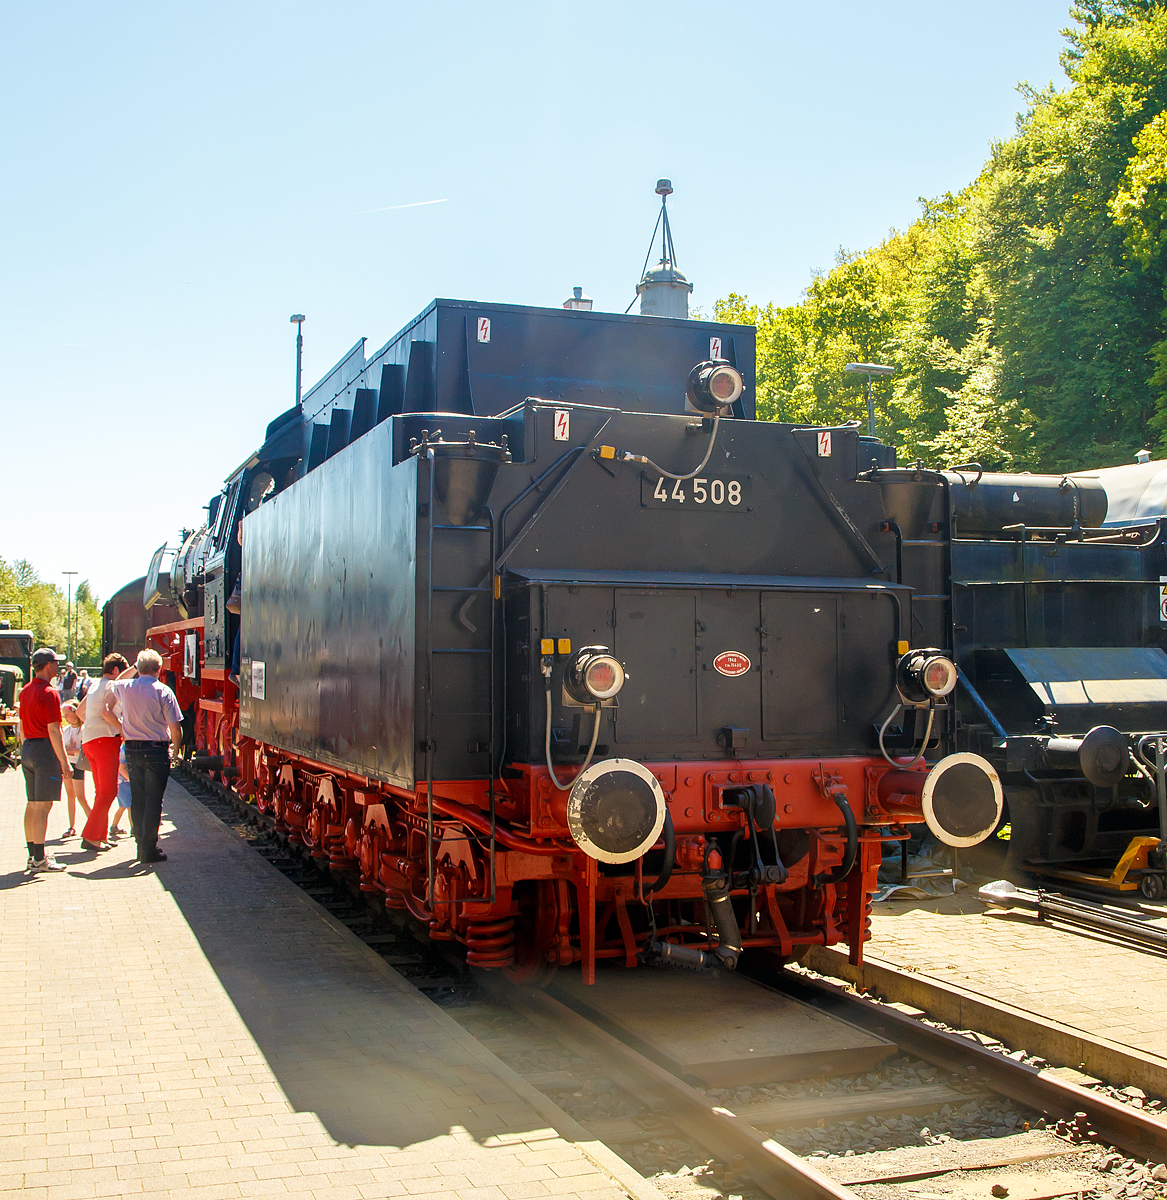 
Ansicht von der Tenderseite: Die schwere Güterzug-Dampflokomotive 44 508, ex DB 044 508-0, steht am 05.05.2018 vor dem Lokschuppen vom Erlebnisbahnhof Westerwald der Westerwälder Eisenbahnfreunde 44 508 e. V. hier war Museumstag. 

Der Tender vom Typ 2'2'T34 ist ursprünglich von Lok 44 1561, er wurde 1940 von Borsig in Berlin unter der Fabriknummer 15400 gebaut.Die Lok ist Eigentum vom DB-Museum und eine Leihgabe an die Eisenbahnfreunde, die nach ihr ihren Verein genannt haben. 